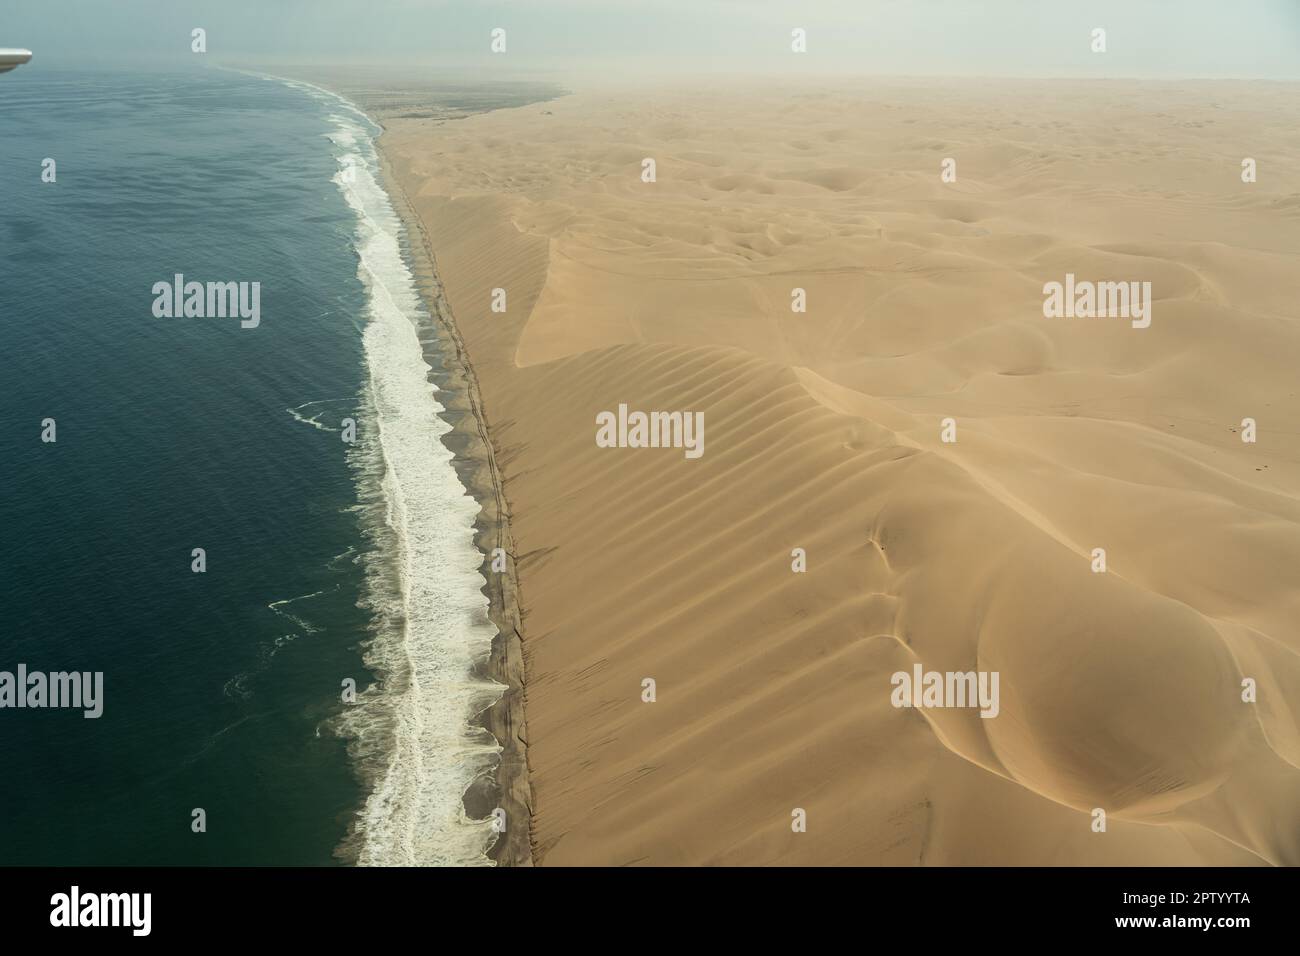 Photographie aérienne de vol au-dessus des dunes qui rencontrent l'océan Atlantique Namibie Banque D'Images